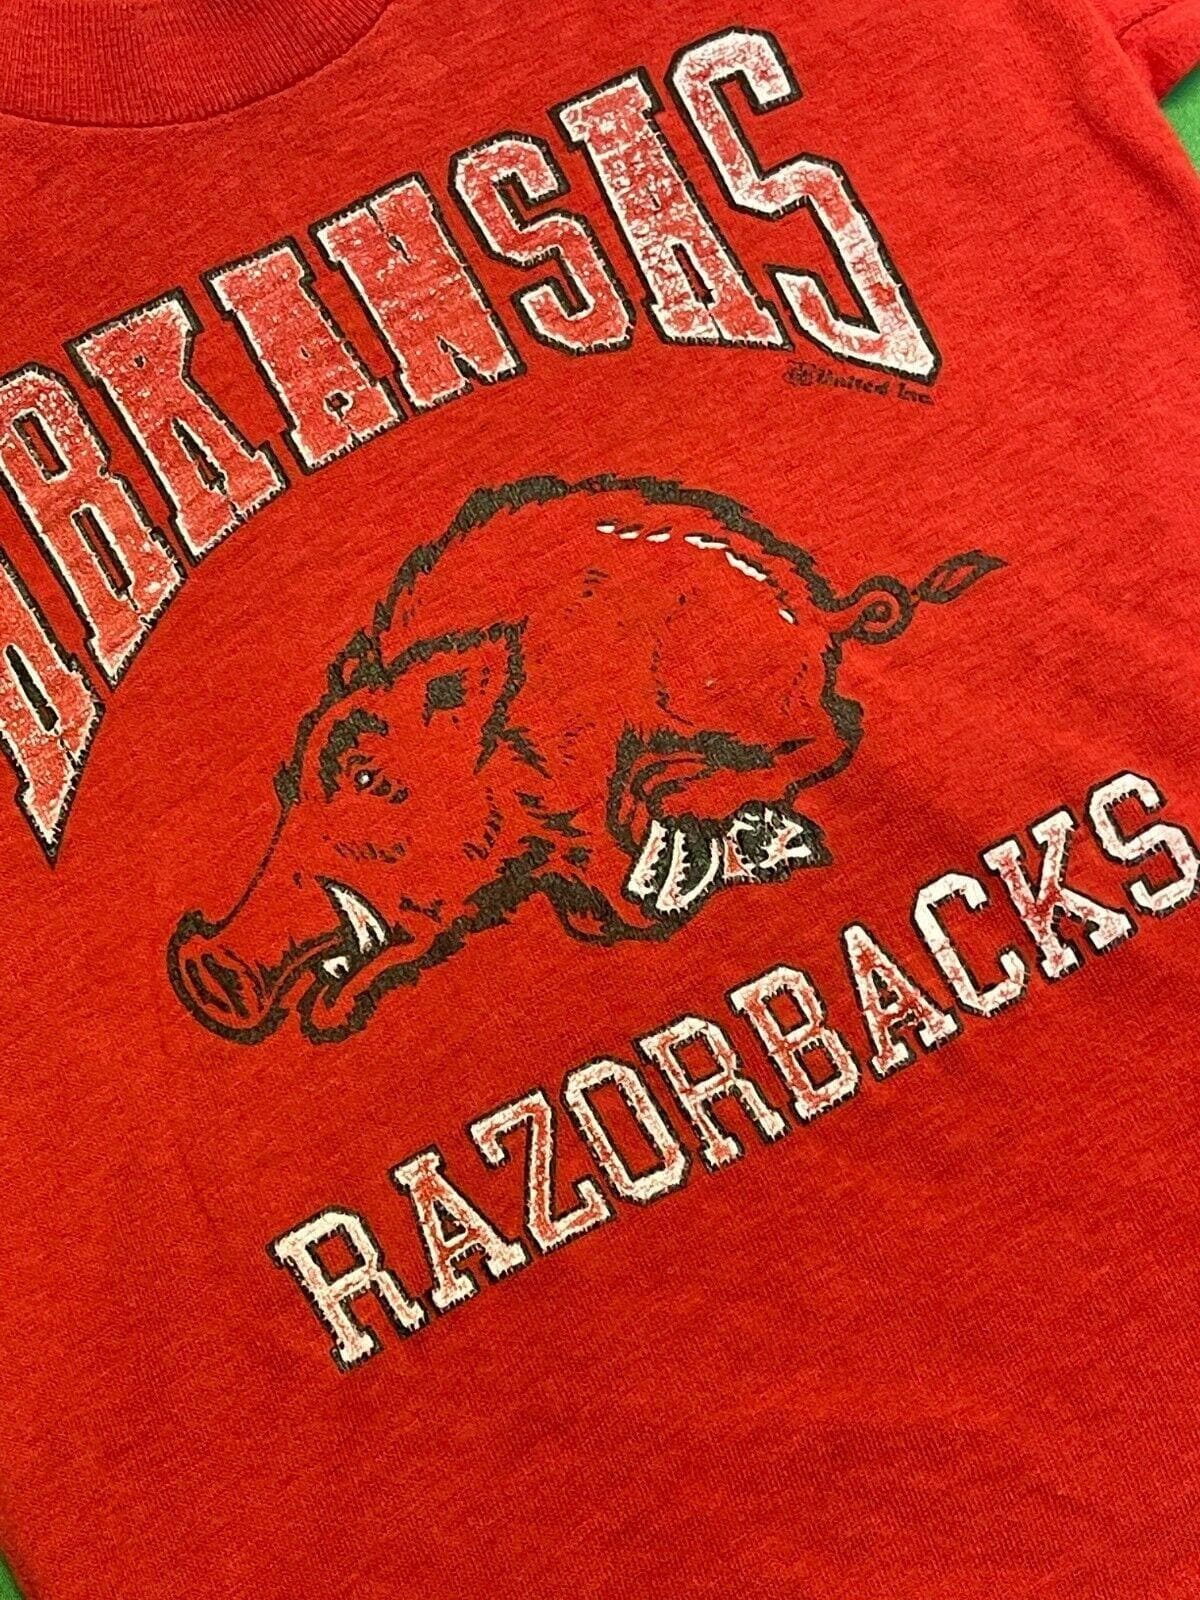 NCAA Arkansas Razorbacks Red T-Shirt Youth XS 4-5